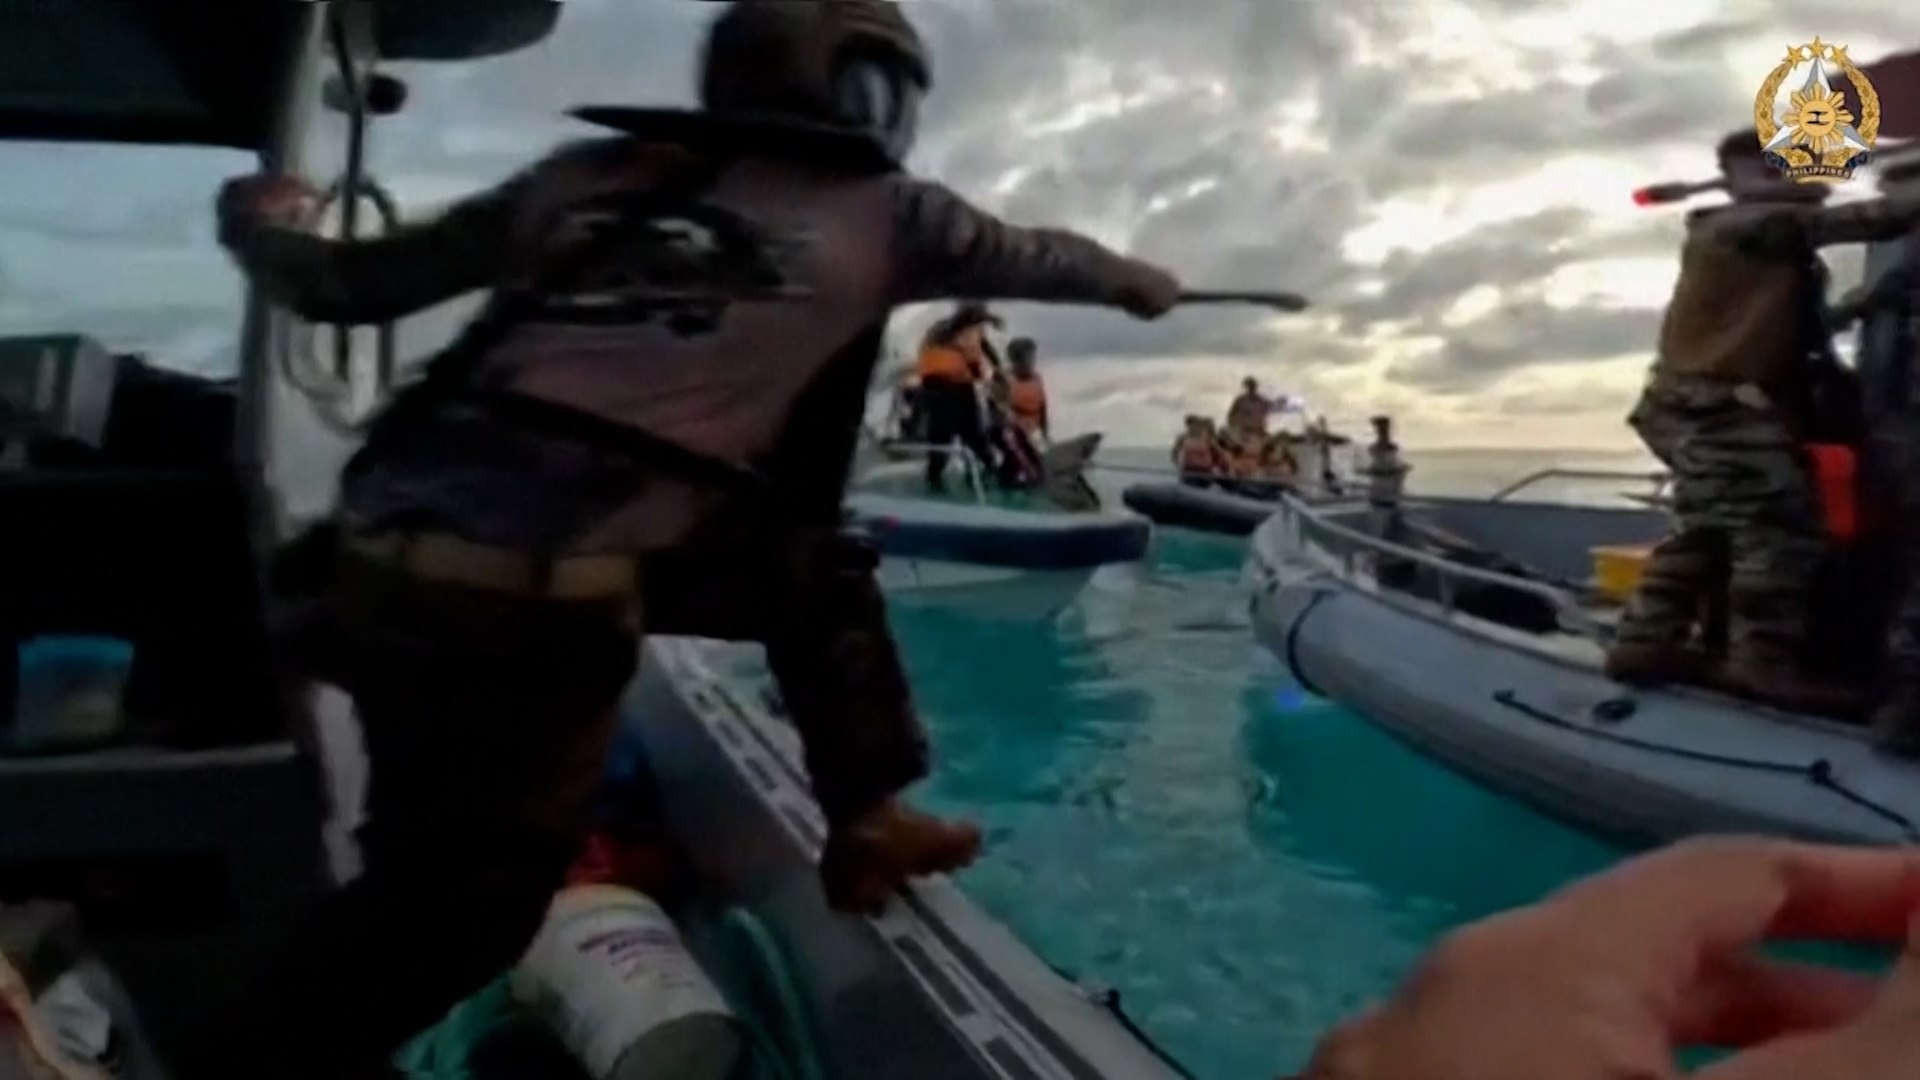 El abordaje con cuchillos y hachas de los guardacostas chinos a un barco de Filipinas: "Slo los piratas hacen esas cosas"